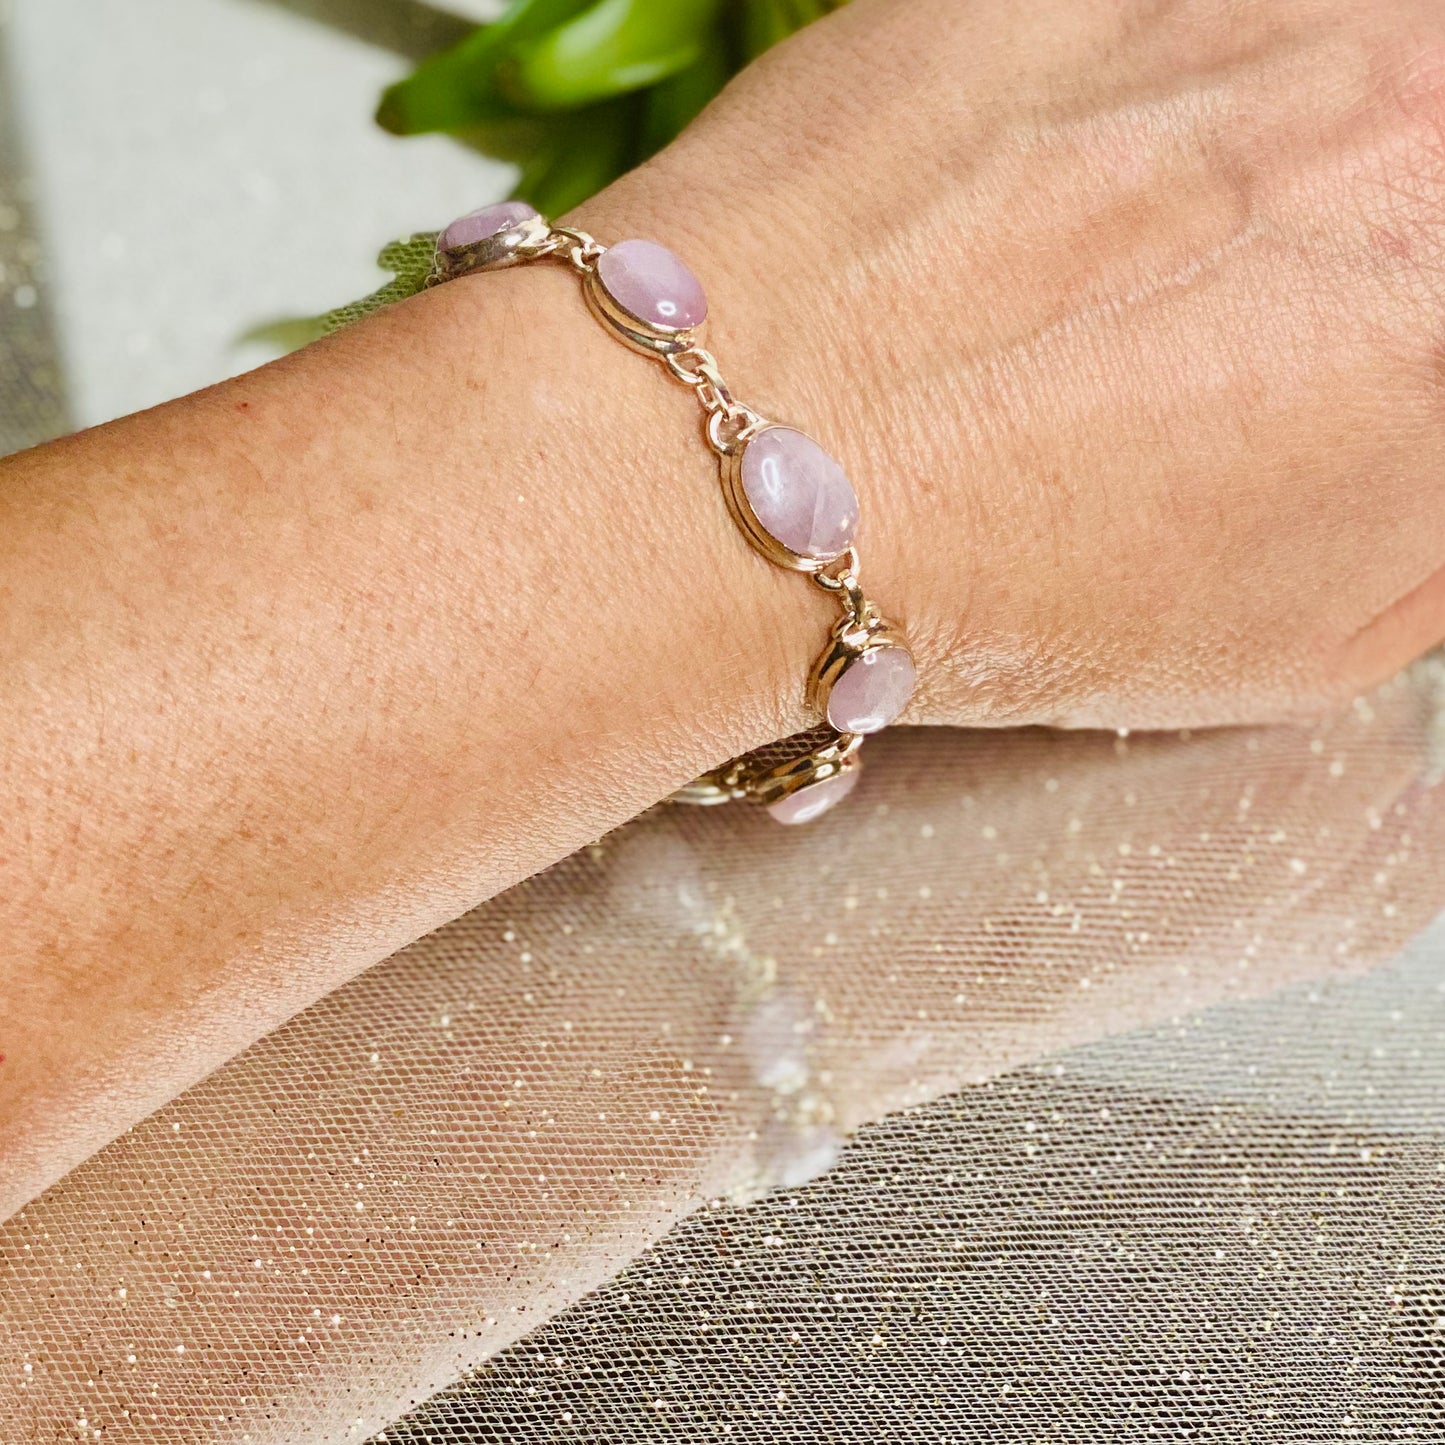 Dreamy Elegance: Kunzite Dangle Bracelet in Sterling Silver - Healing Crystal Jewelry